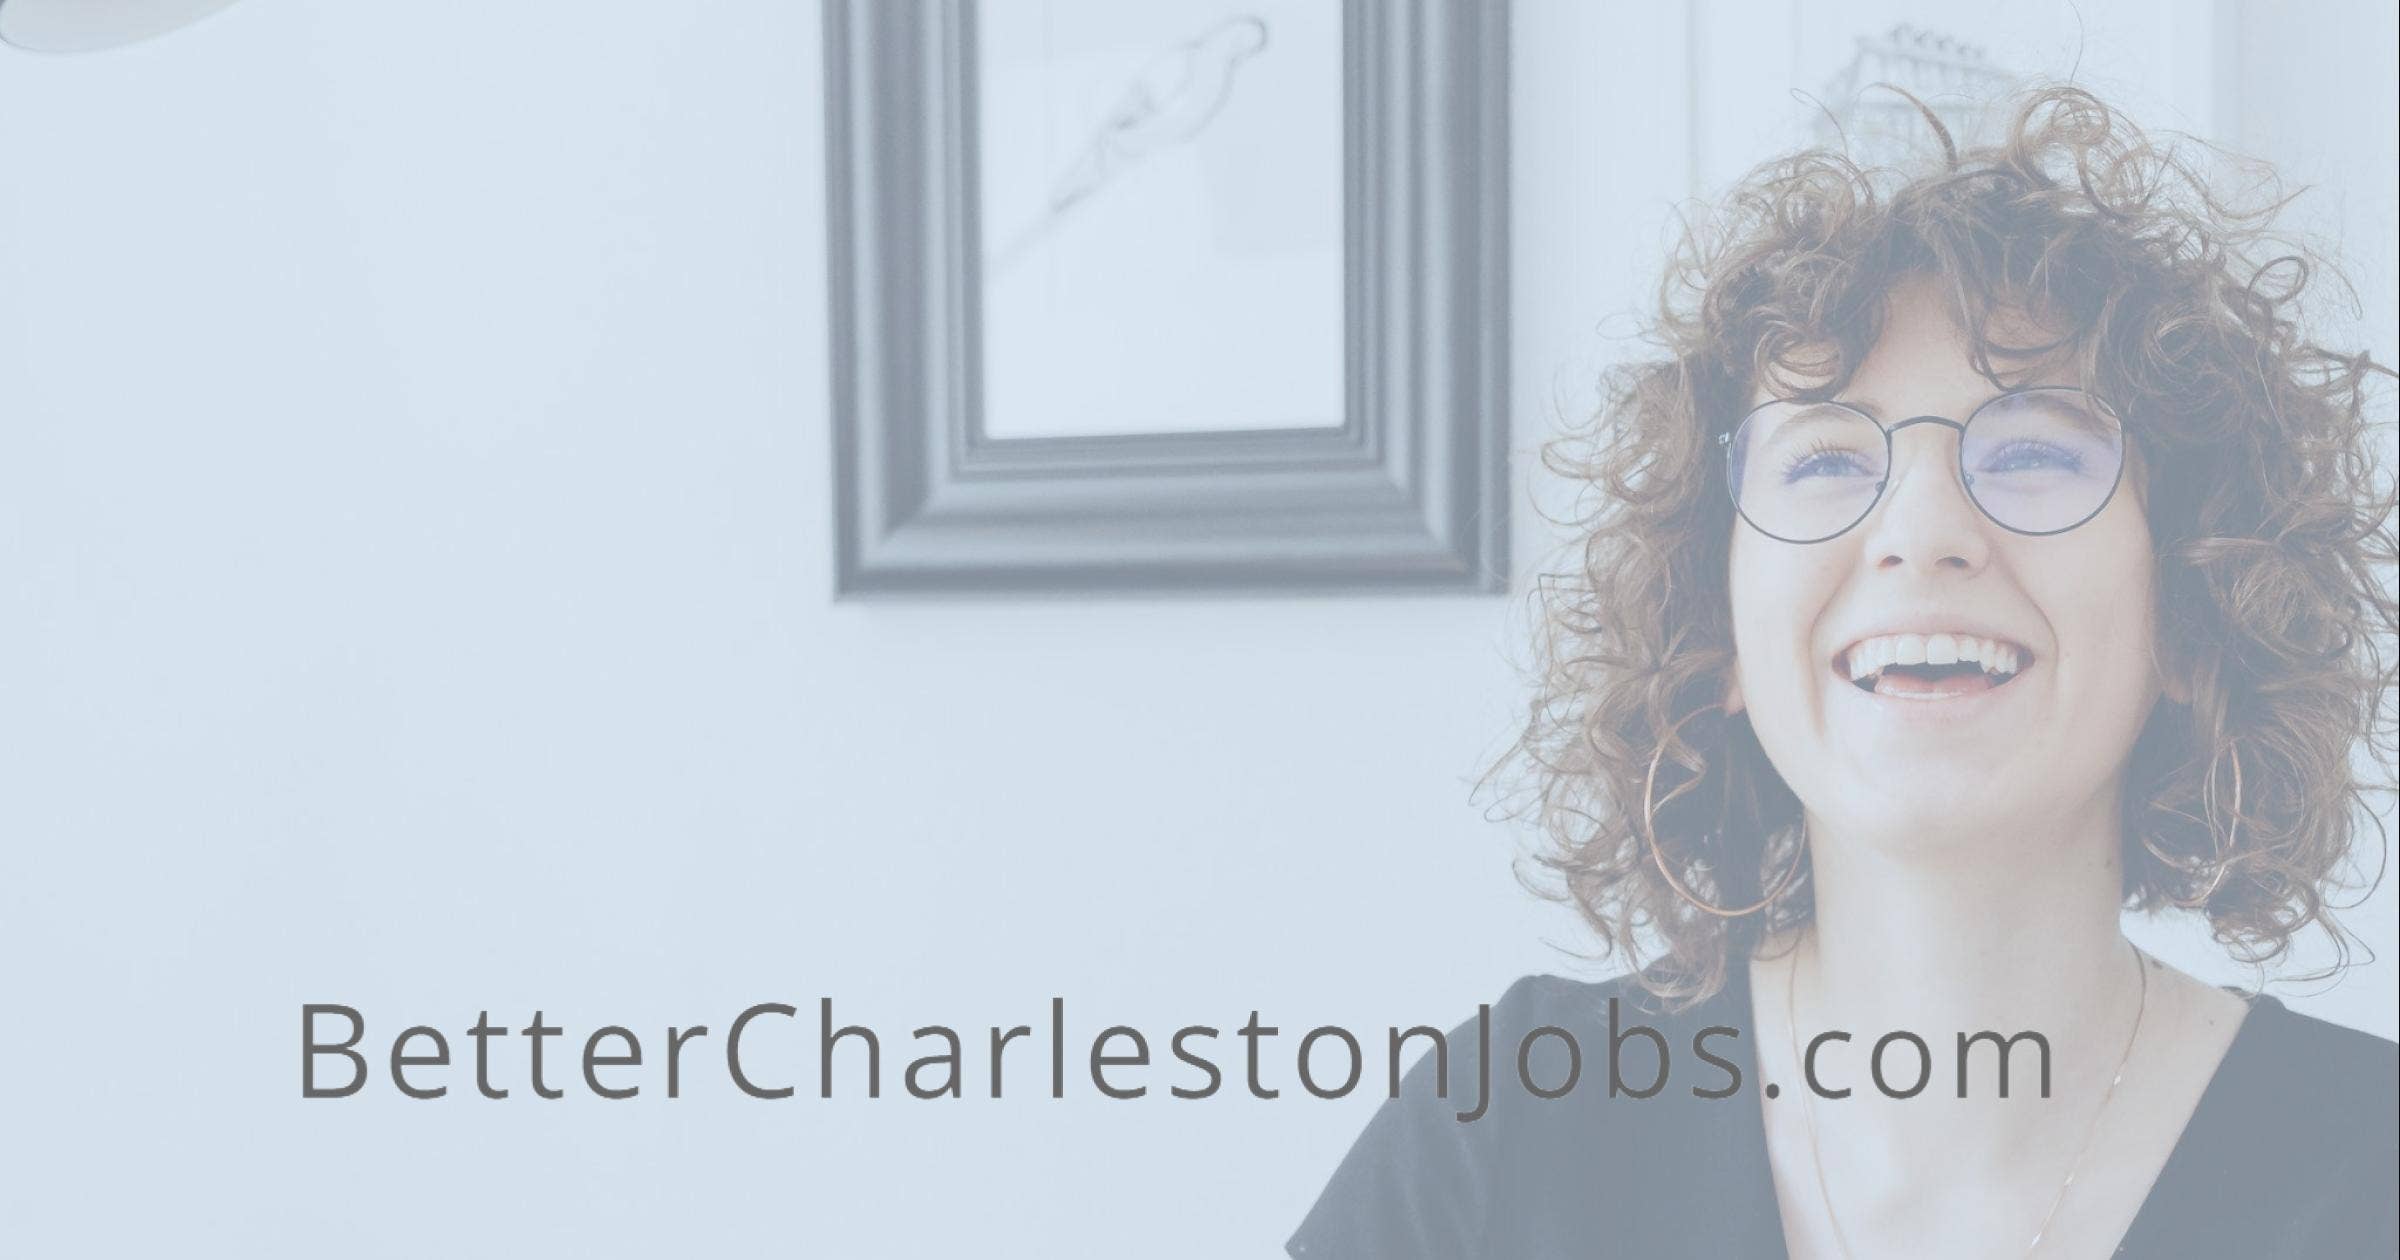 Charleston Jobs